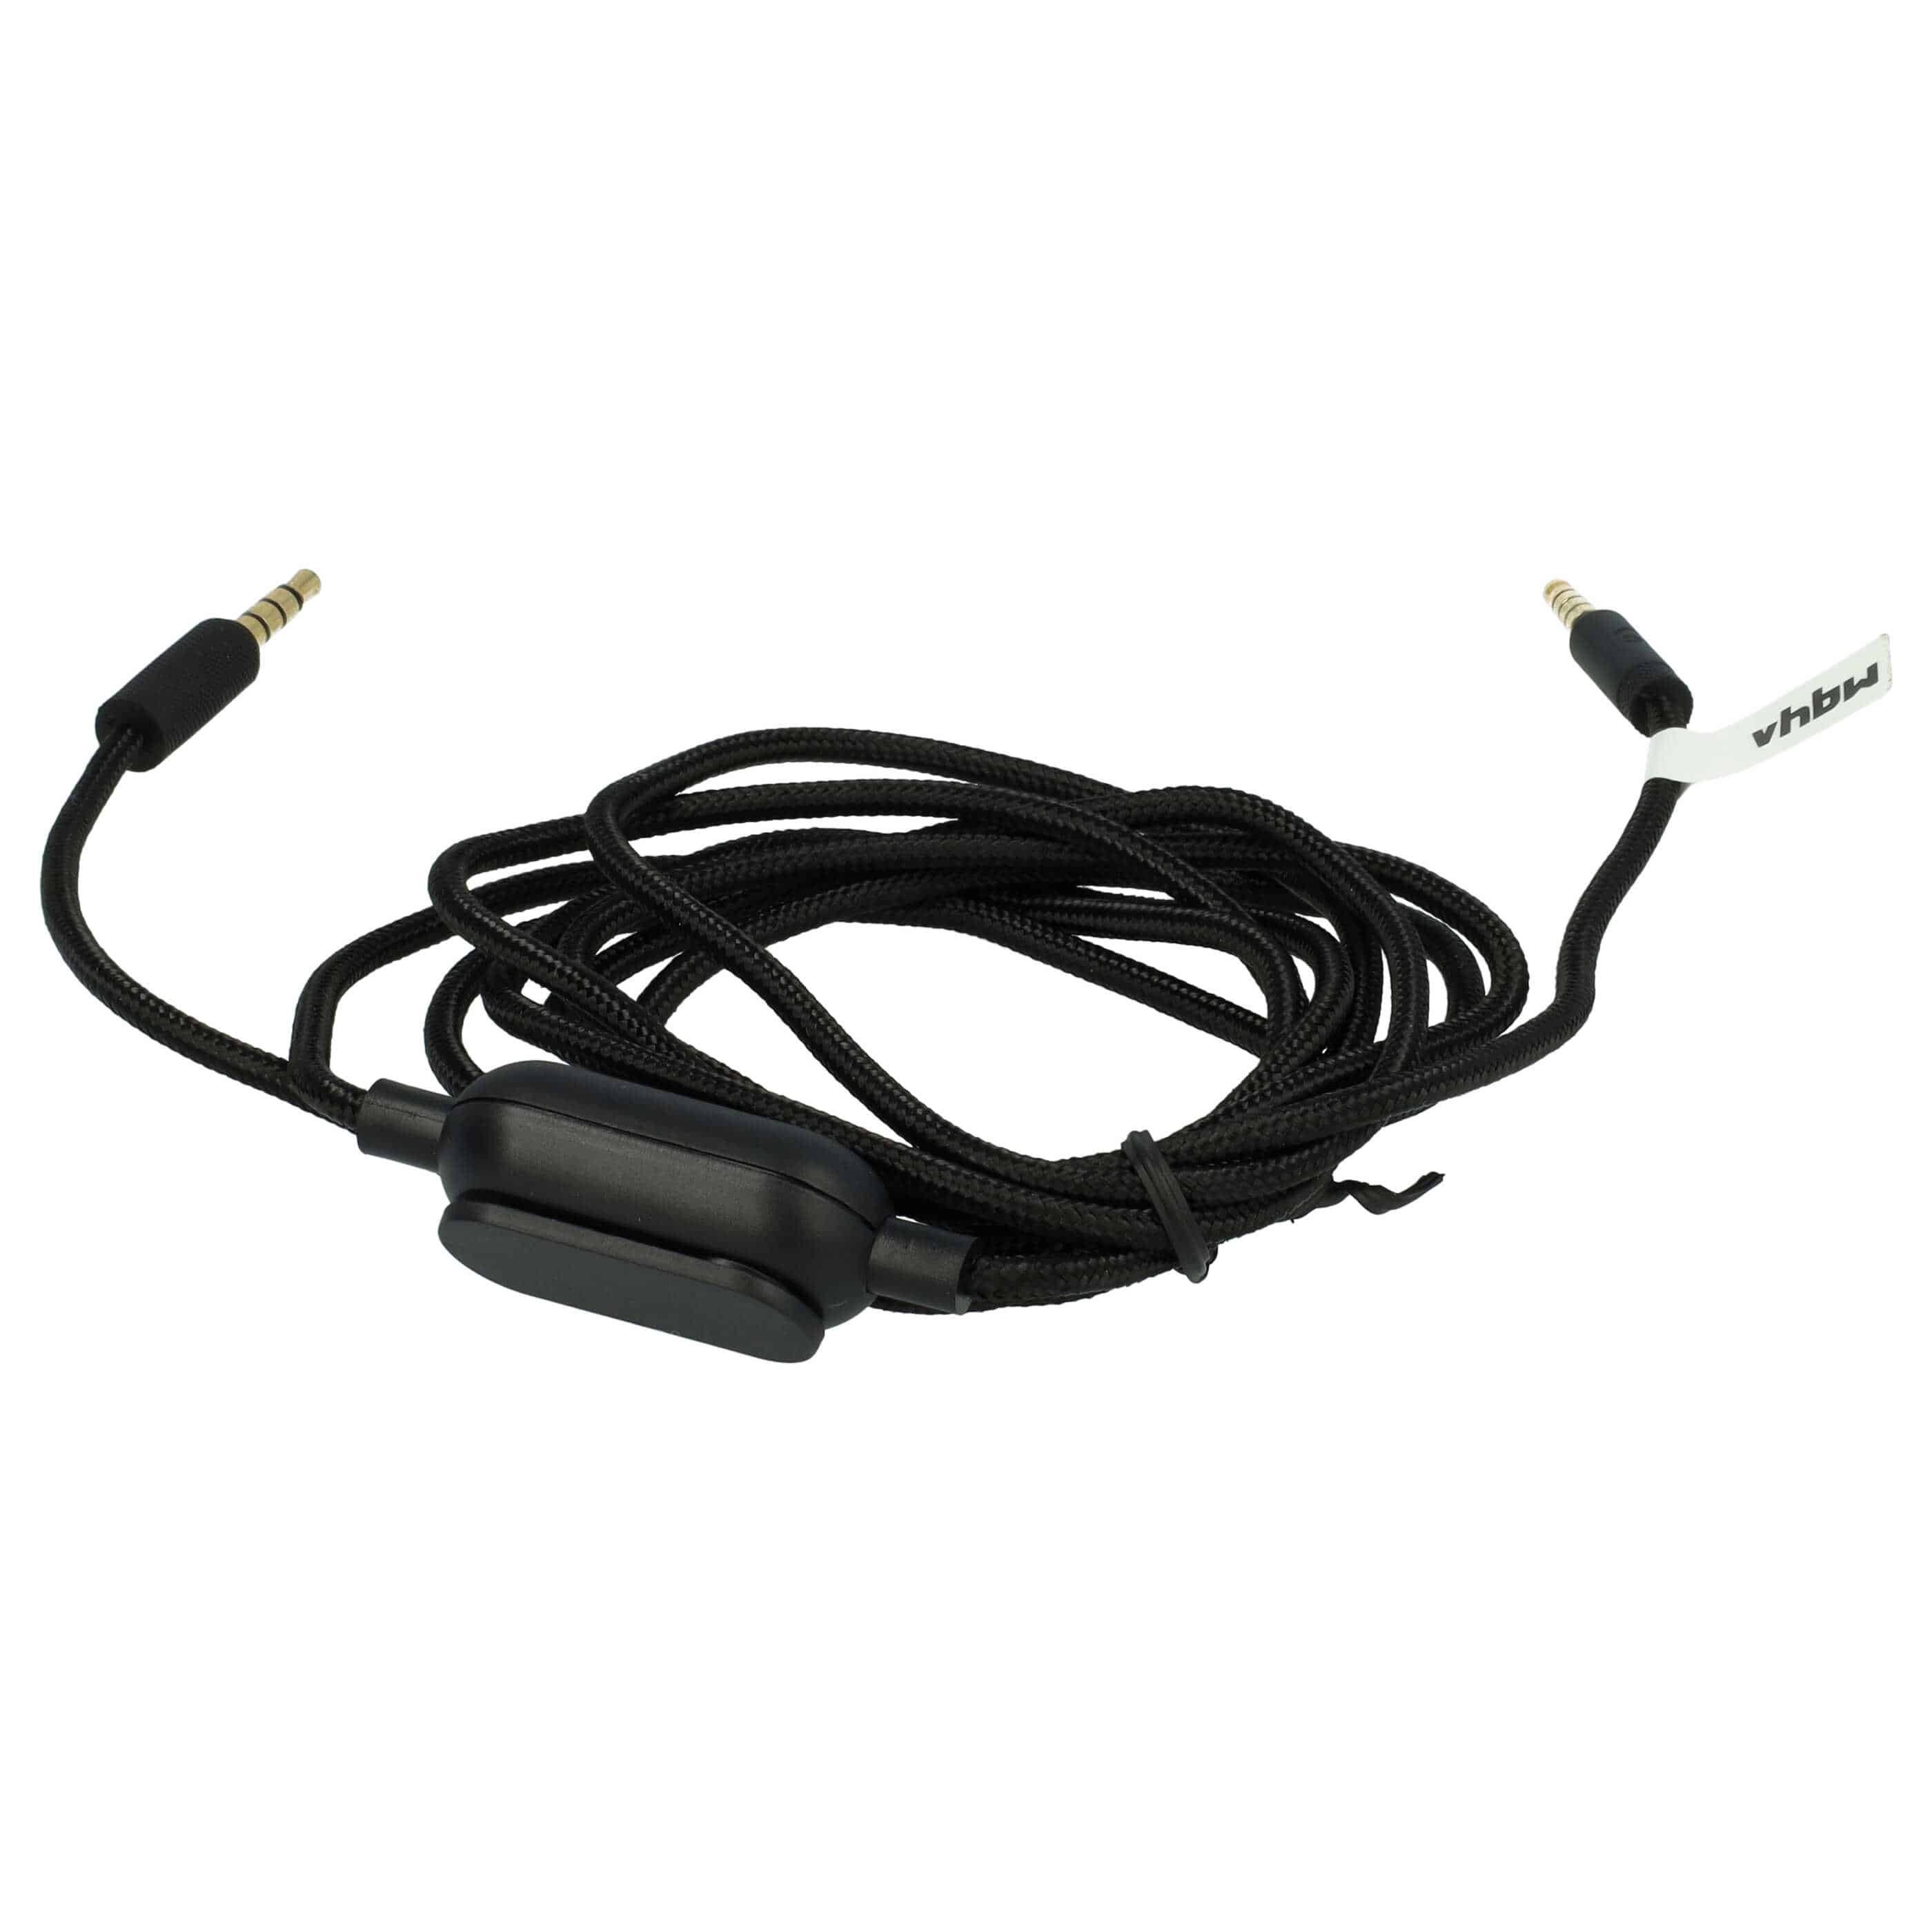 Cable audio AUX a conector jack de 3,5 mm para auriculares Logitech G Pro, G Pro X, G233, G433